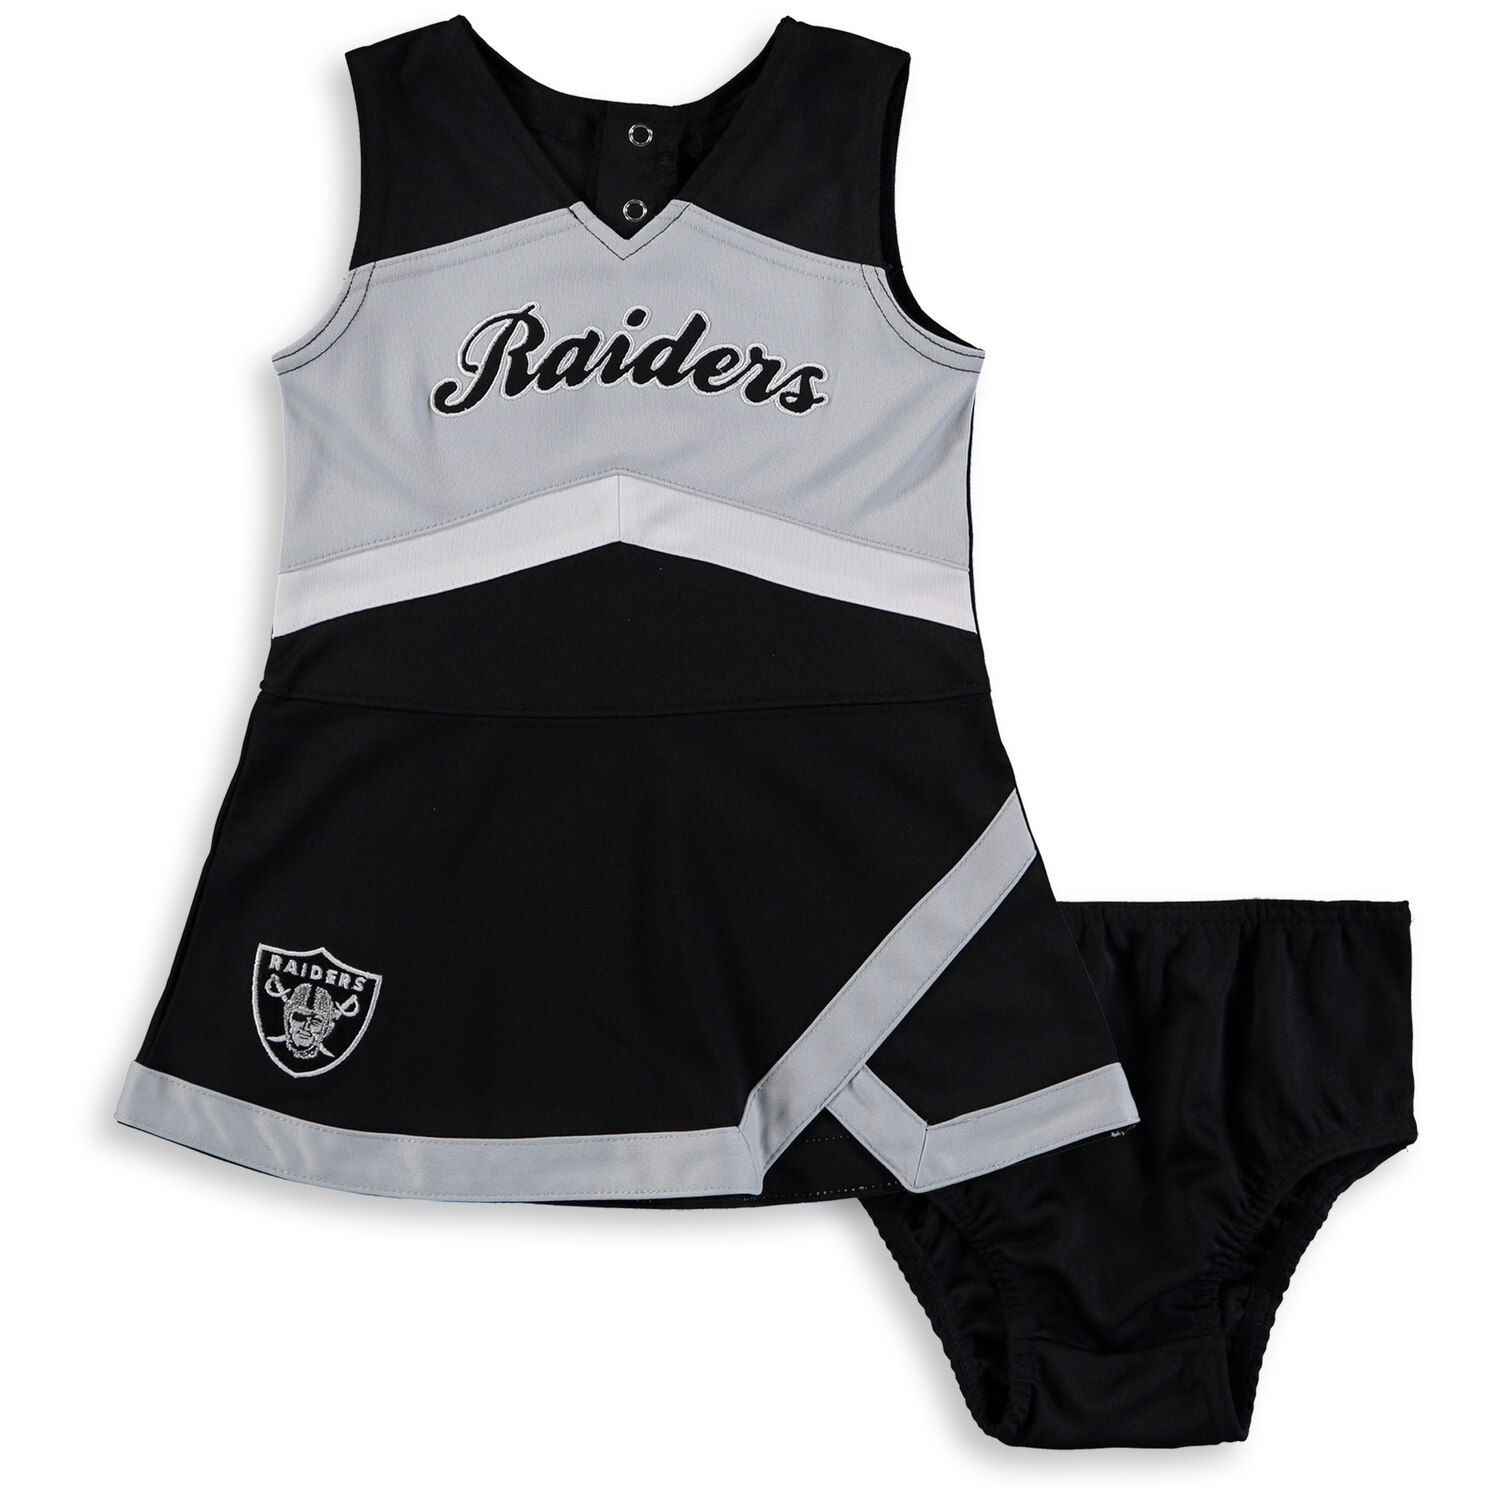 baby raiders jersey